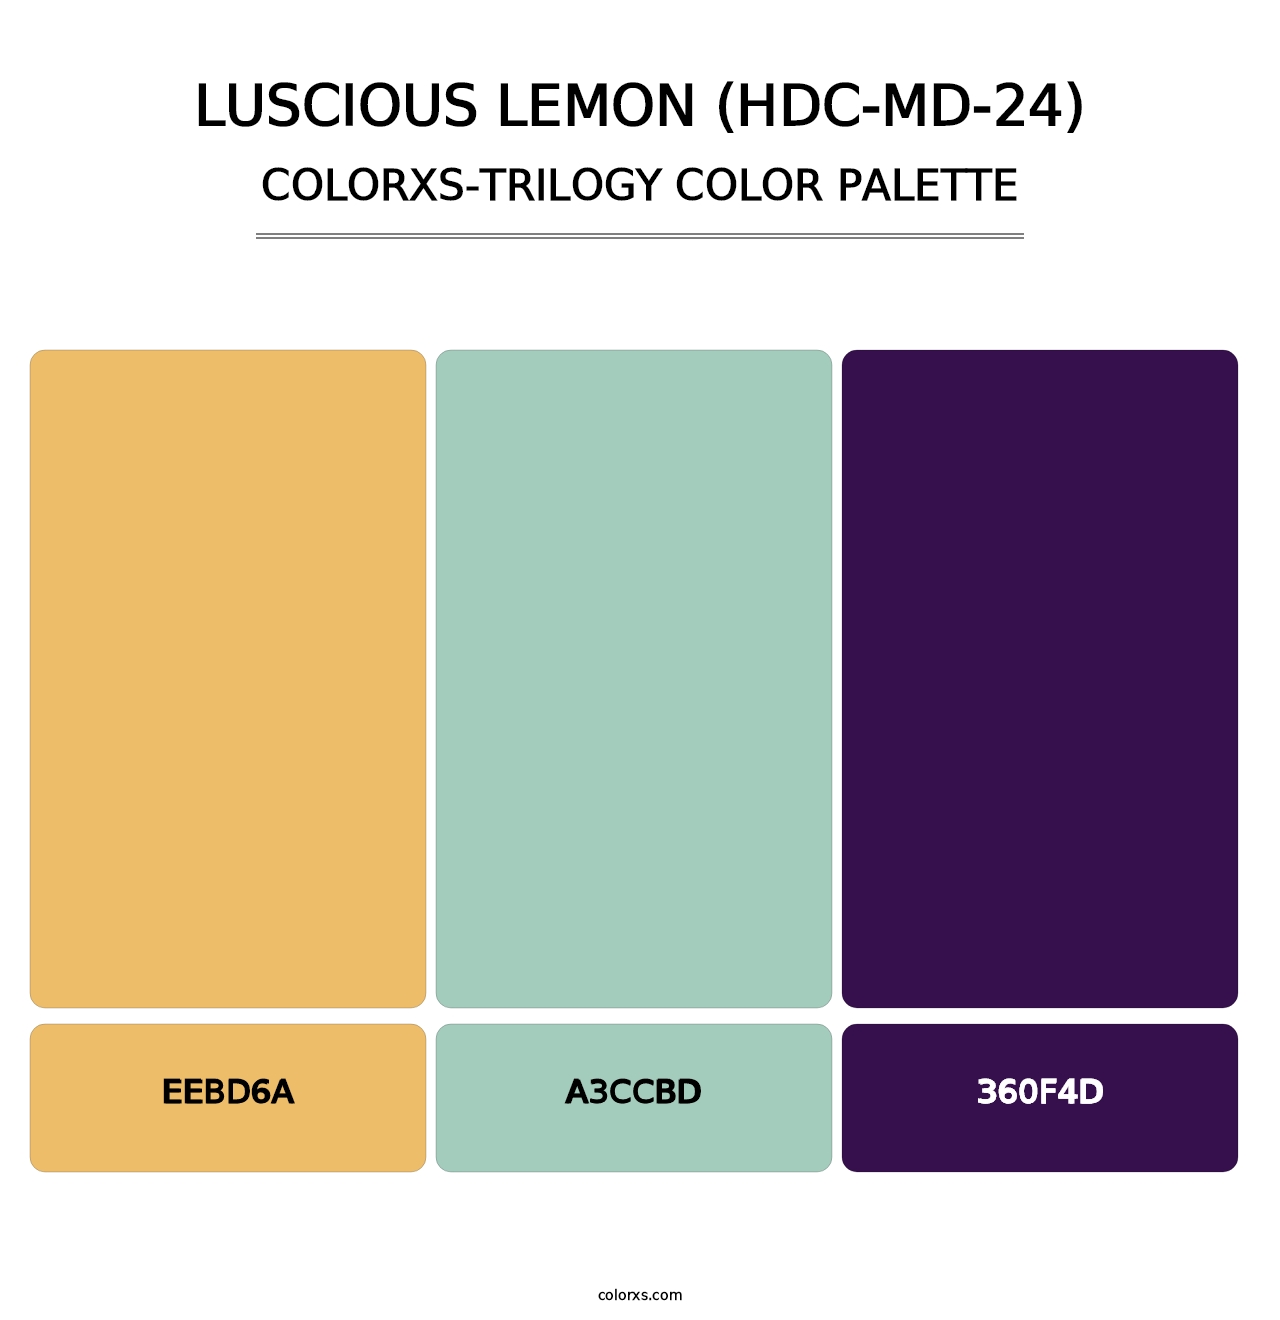 Luscious Lemon (HDC-MD-24) - Colorxs Trilogy Palette